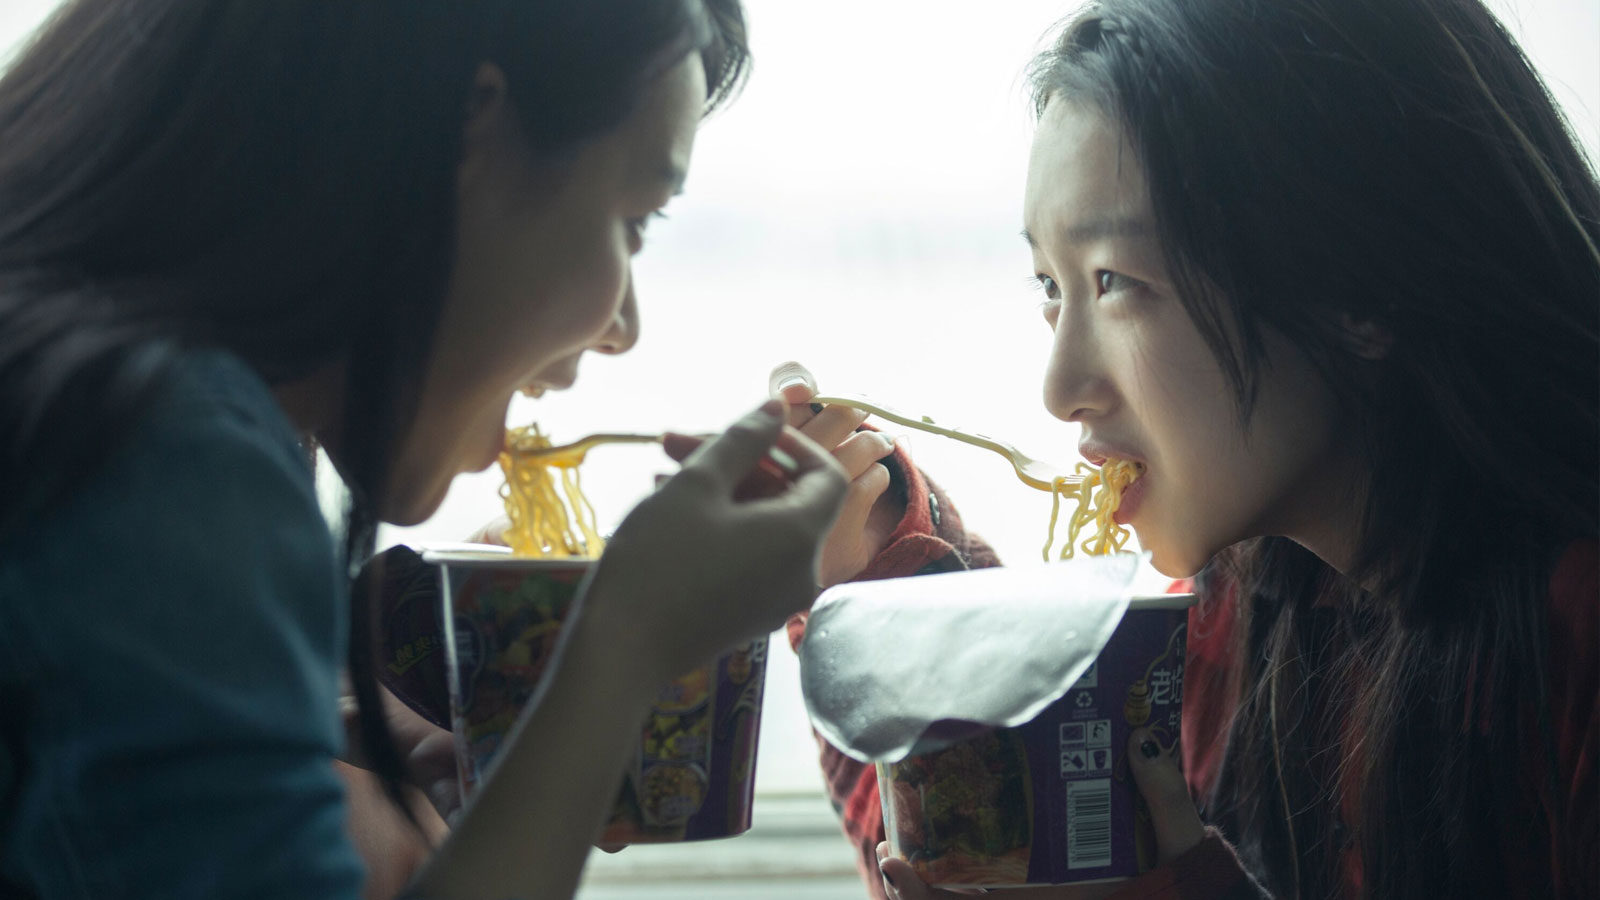 Asian Schoolgirl Bus - New York Asian Film Festival 2017